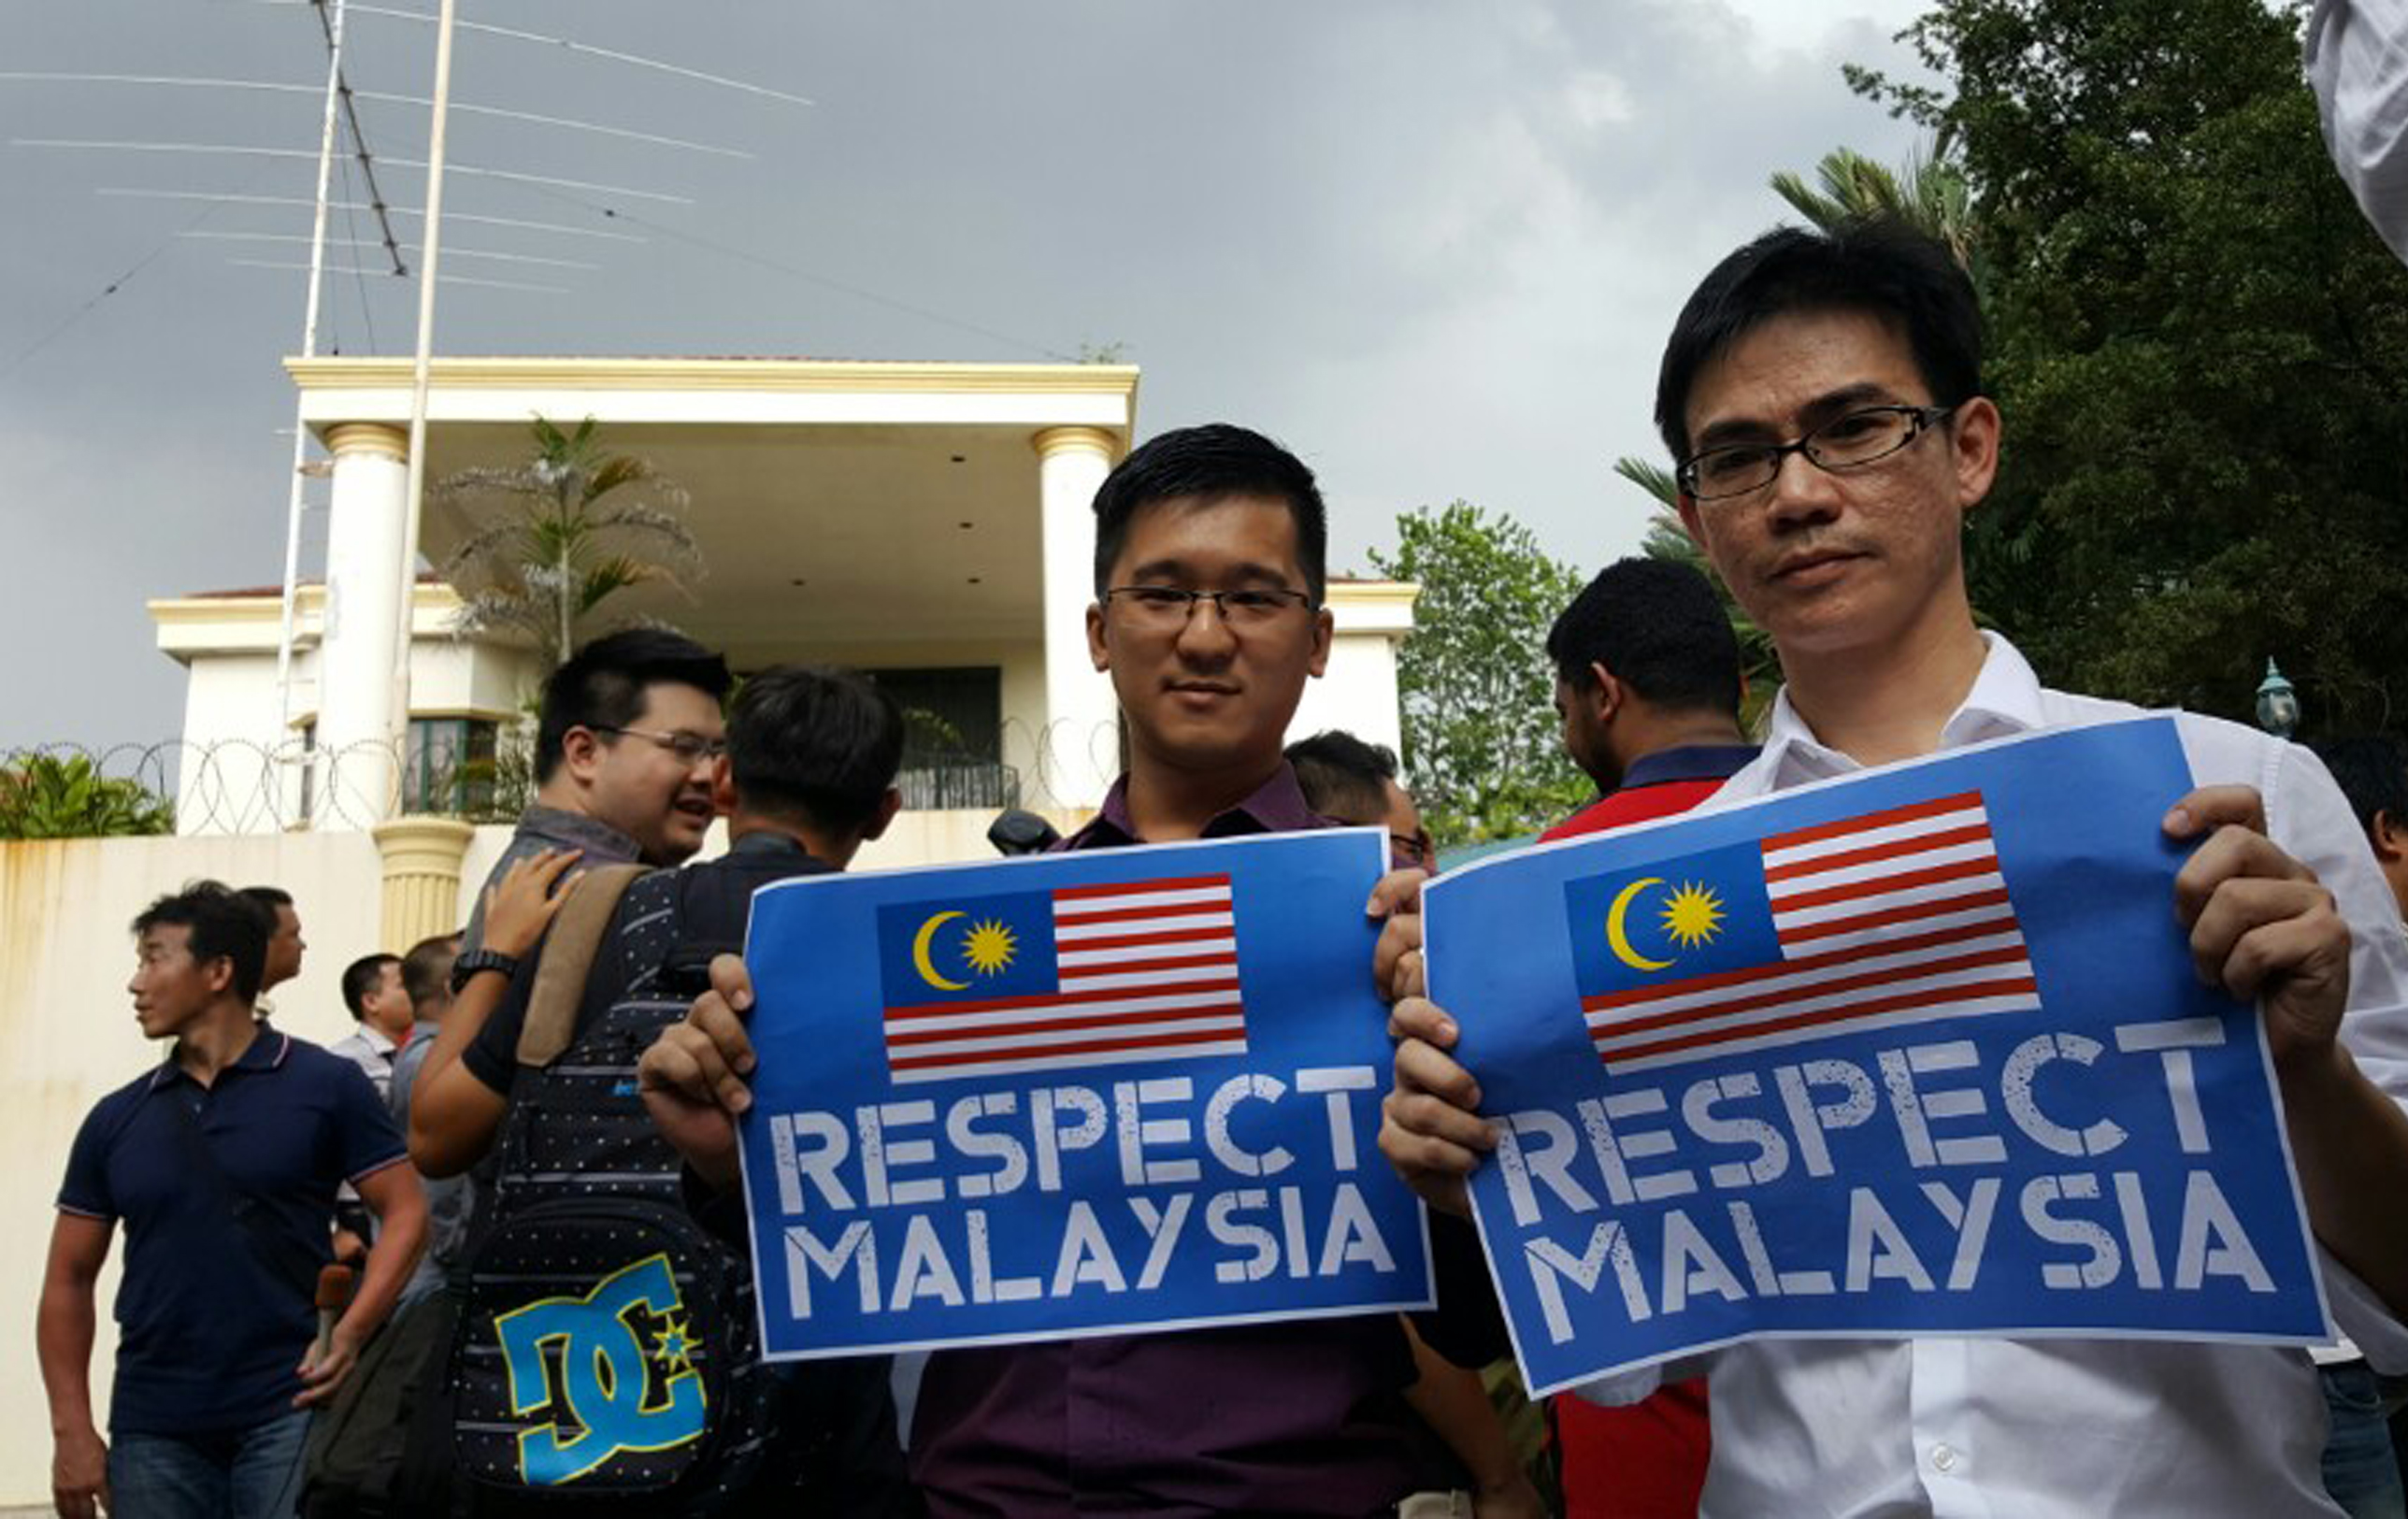 "Уважайте Малайзию" — протест перед посольством Северной Кореи в Малайзии. Фото: EPA